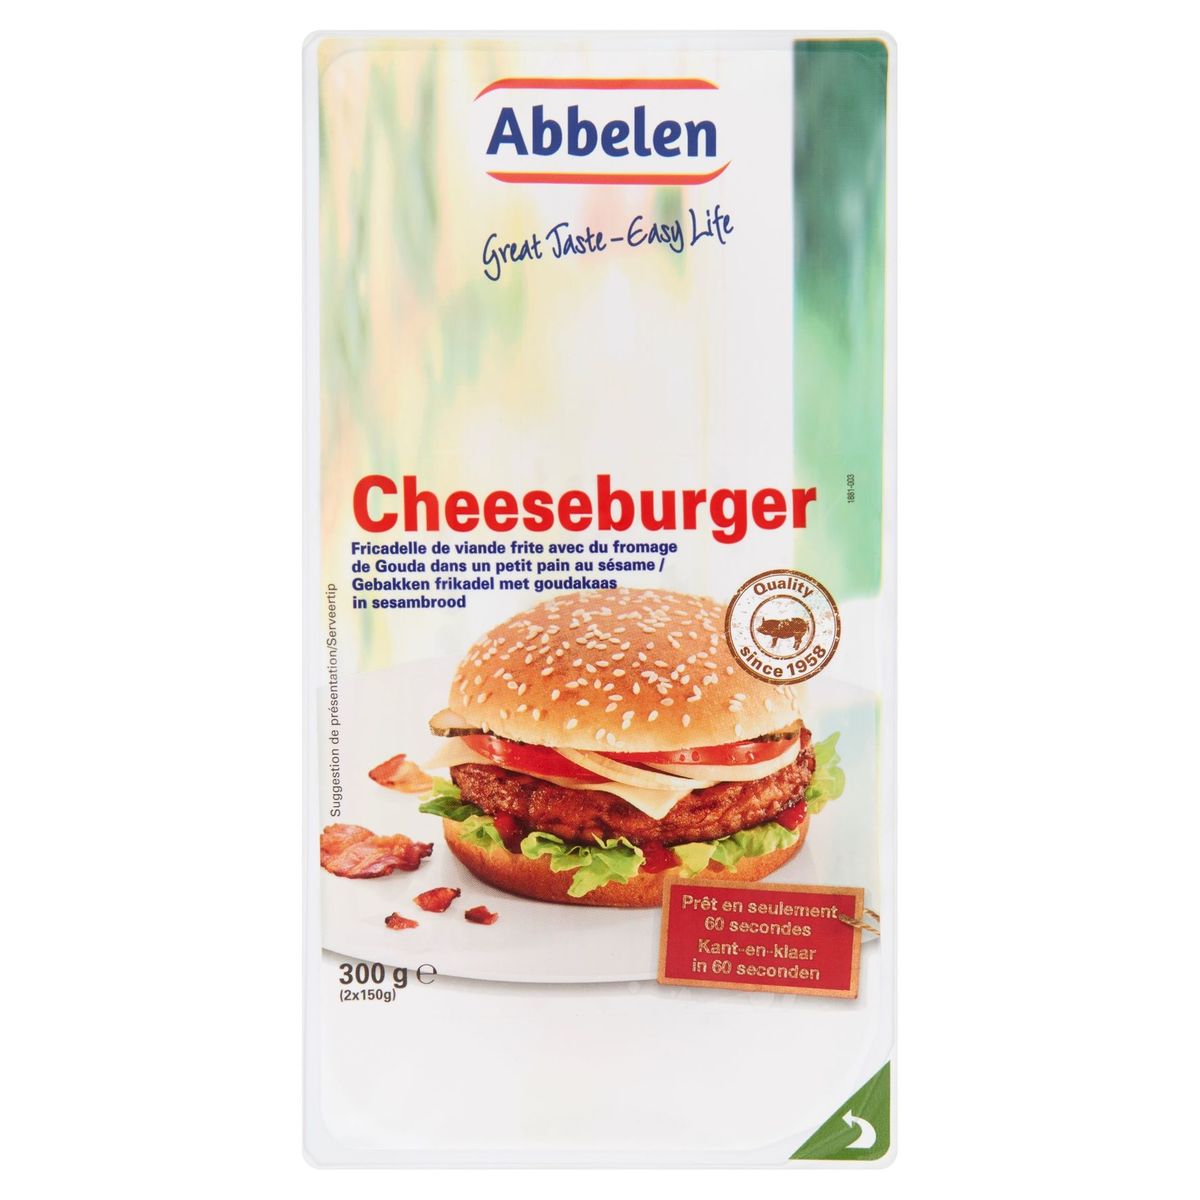 Abbelen Cheeseburger 2 x 150 g